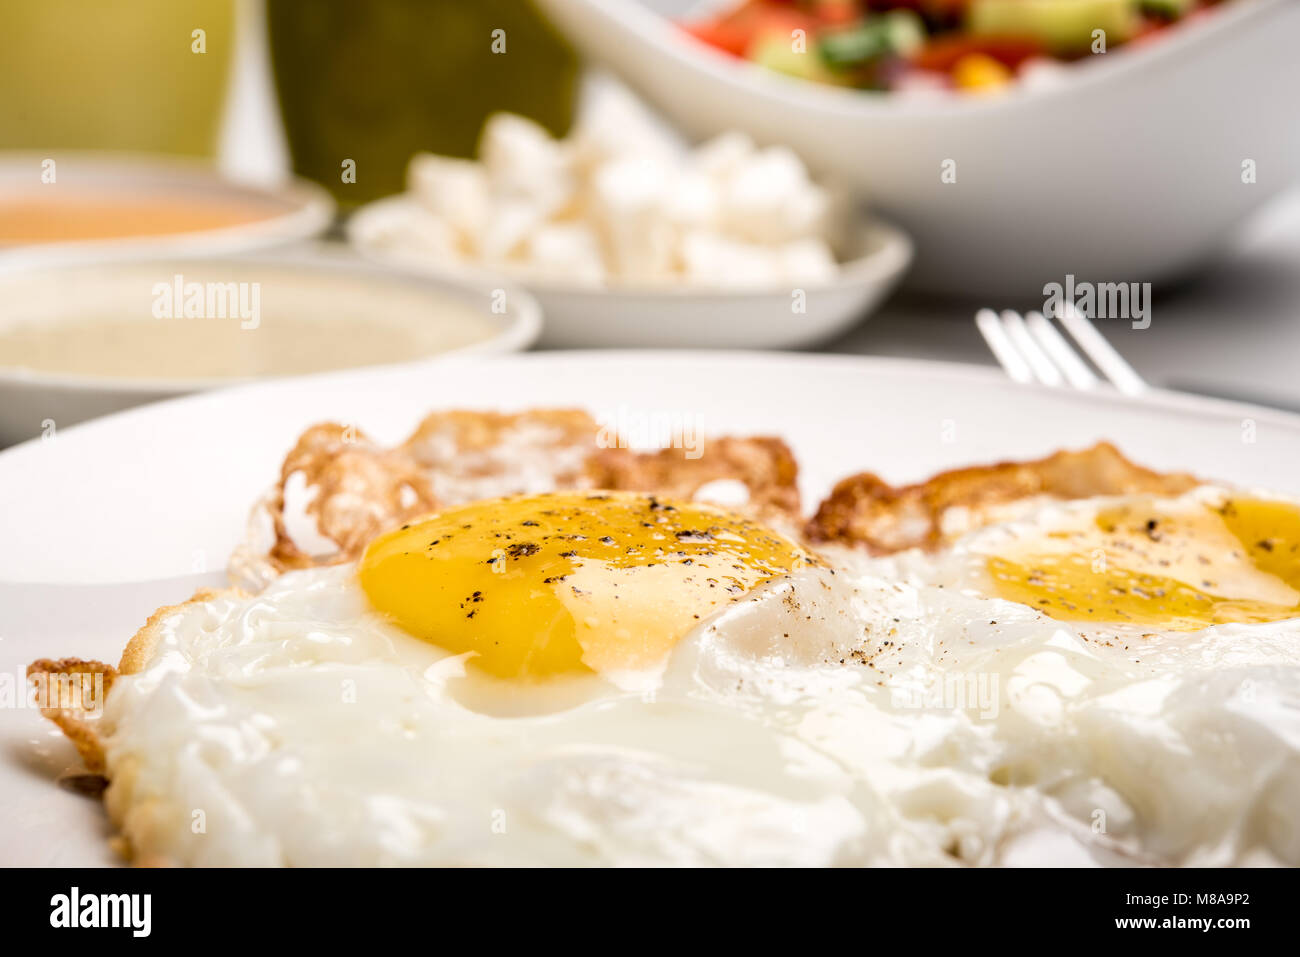 Traditionelles israelisches Frühstück mit zwei Spiegeleier, gelben Käse, Salat, eine frische Brötchen und einer Tasse Cappuccino. Nahaufnahme auf die gebratenen Eier Stockfoto